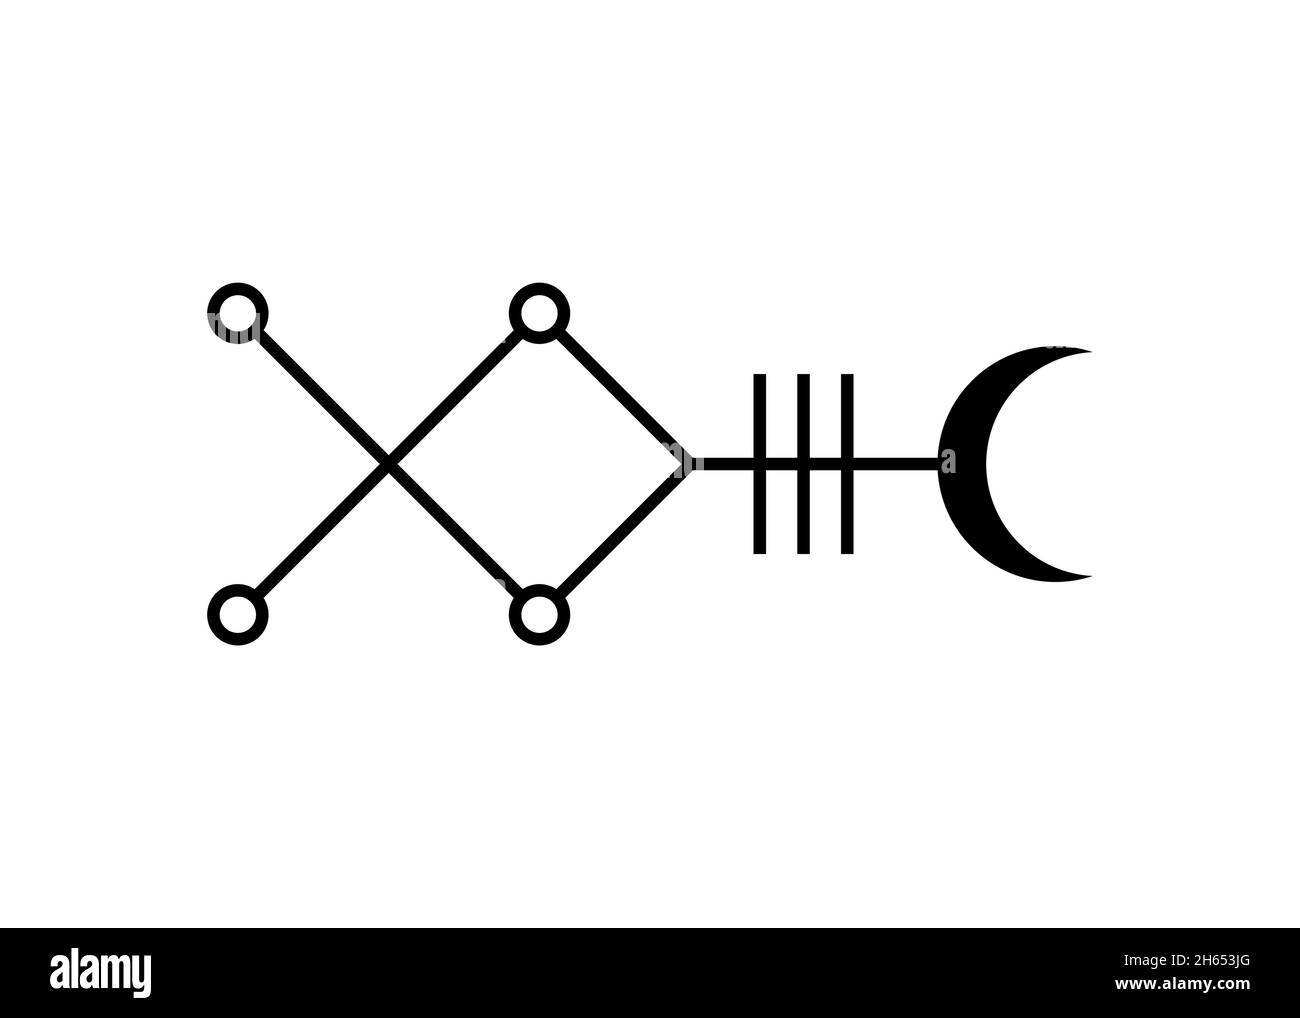 Symbole mystique de l'étoile de Sirius Astrologie Alphabet signe, Canis symboles kabbalistiques hiéroglyphiques majeurs, illustration noire de vecteur d'icône de tatouage isolée Illustration de Vecteur